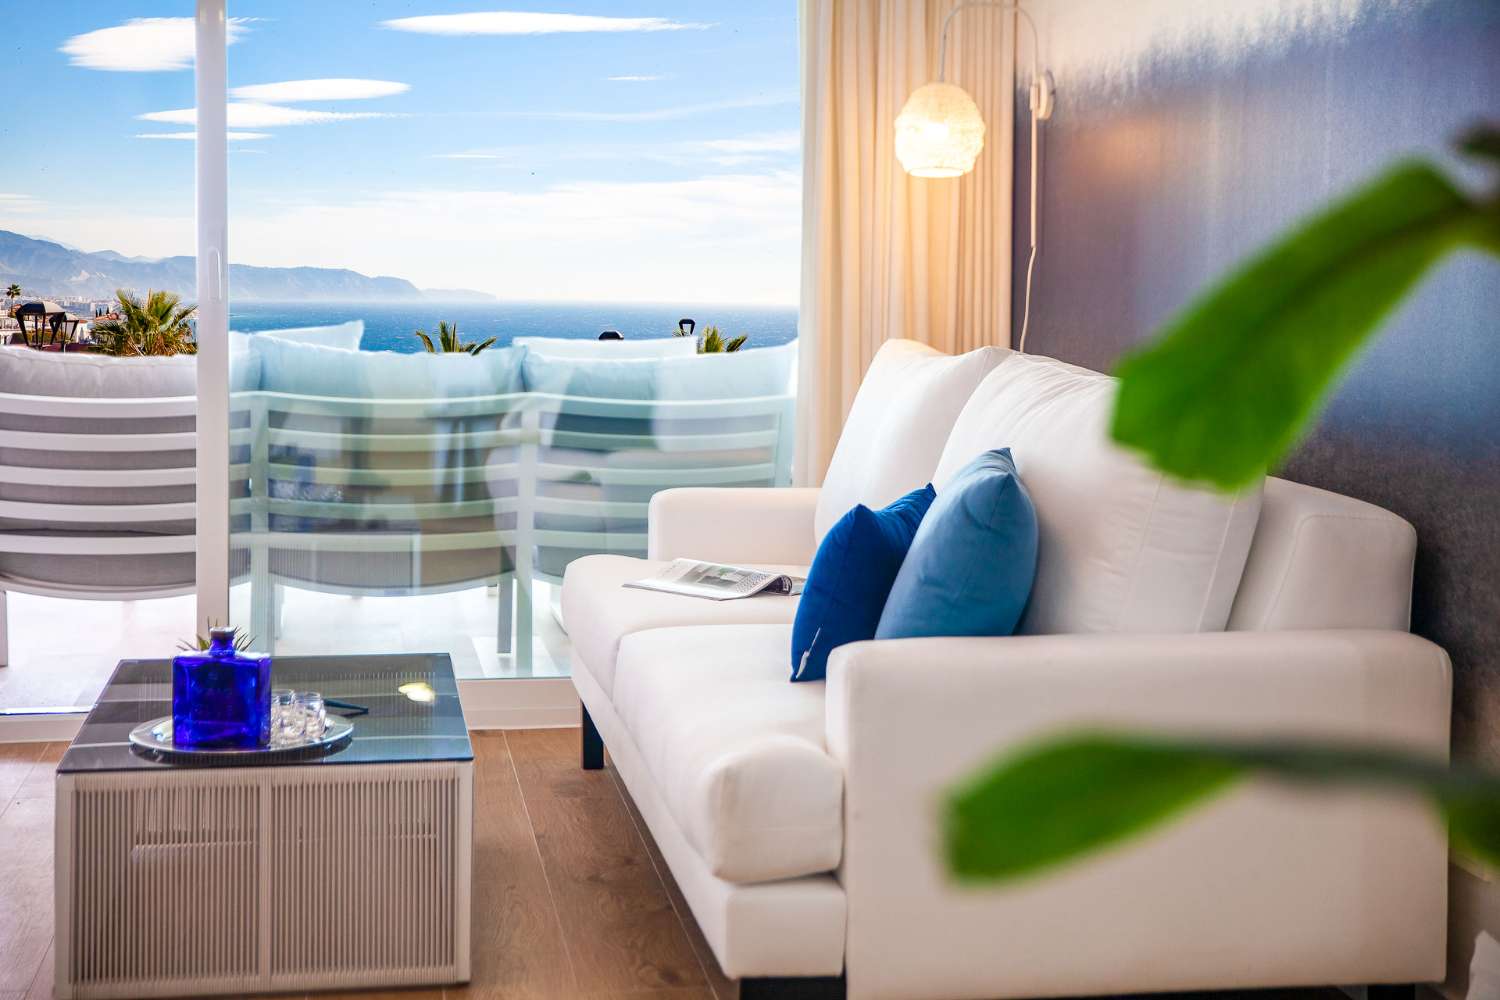 Penthouse disponible dans un complexe résidentiel avec une vue imprenable sur la mer